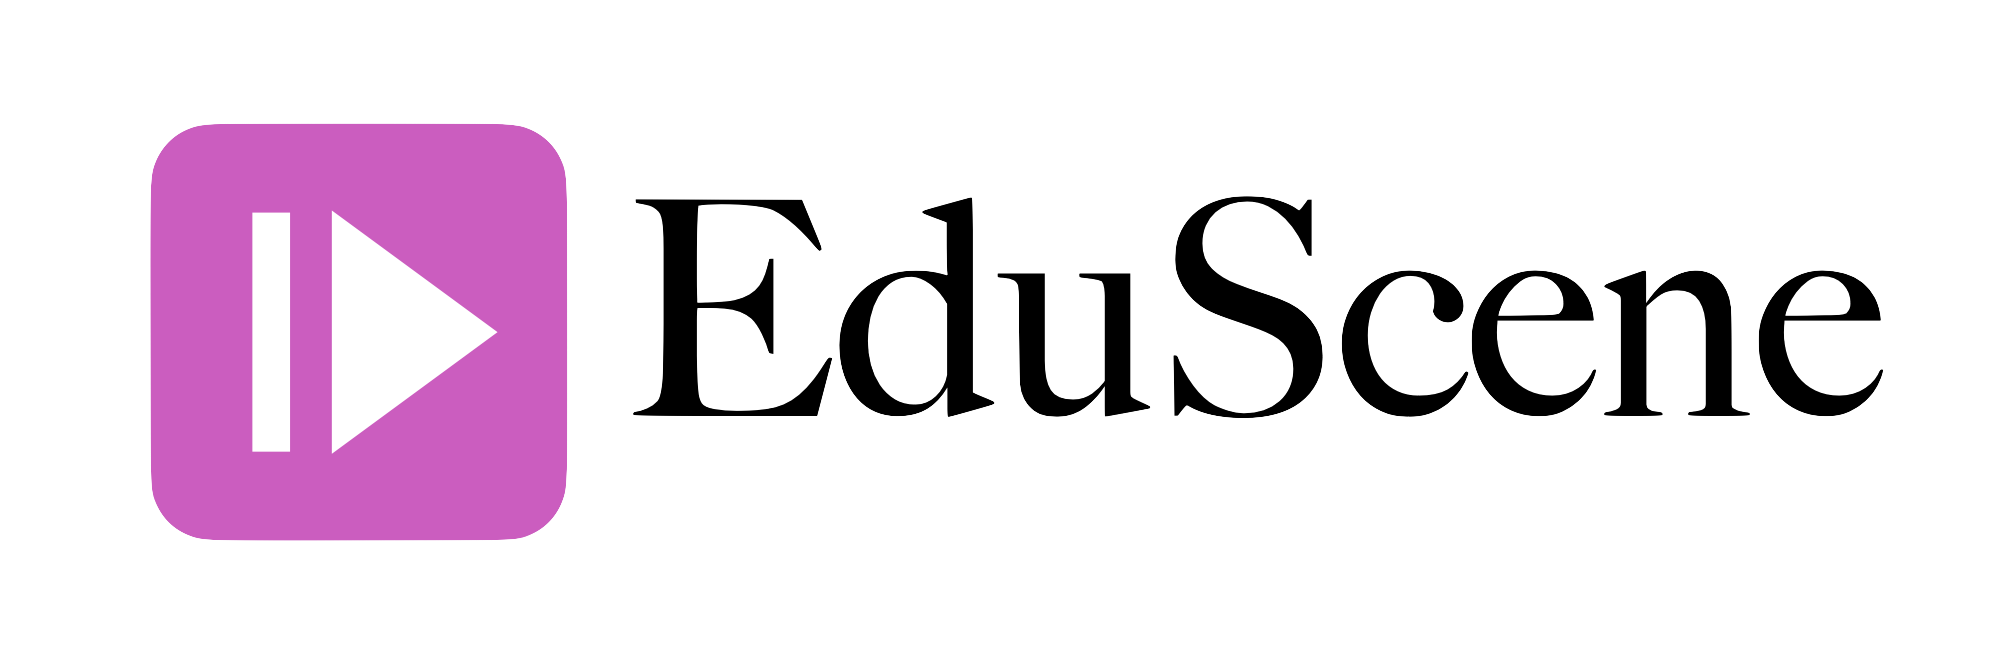 logo EduScene massgeschneiderte Videoszenen